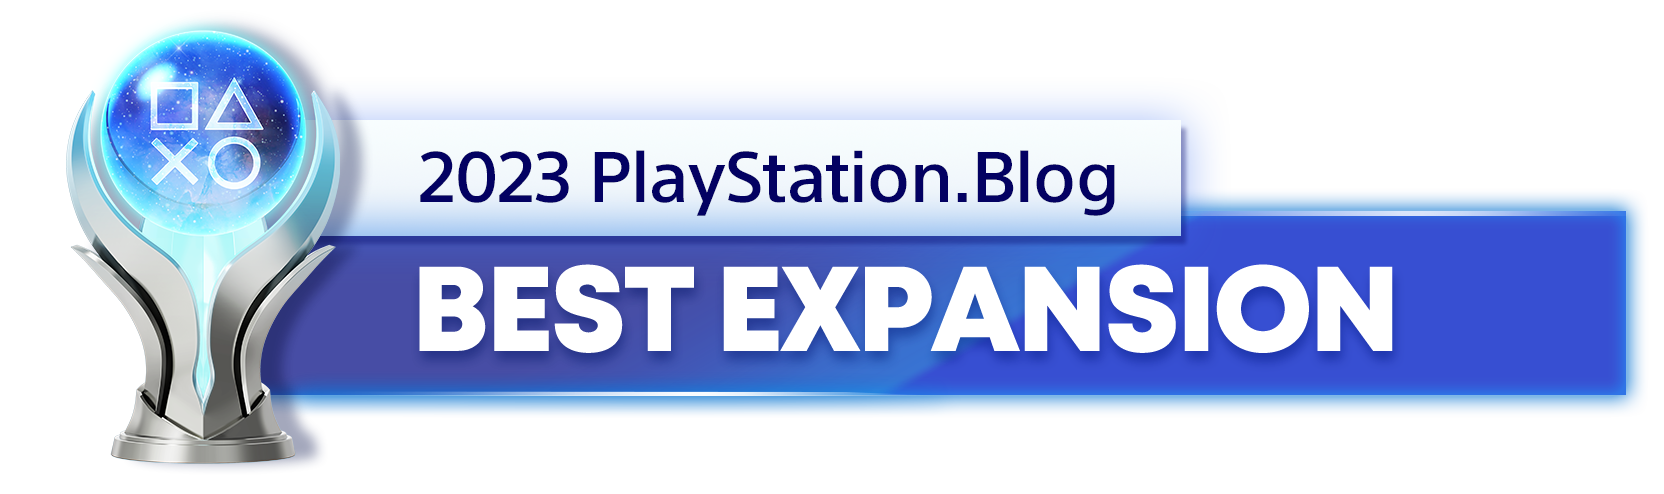  "Platinum Trophy for the 2023 PlayStation Blog Best Expansion Winner"